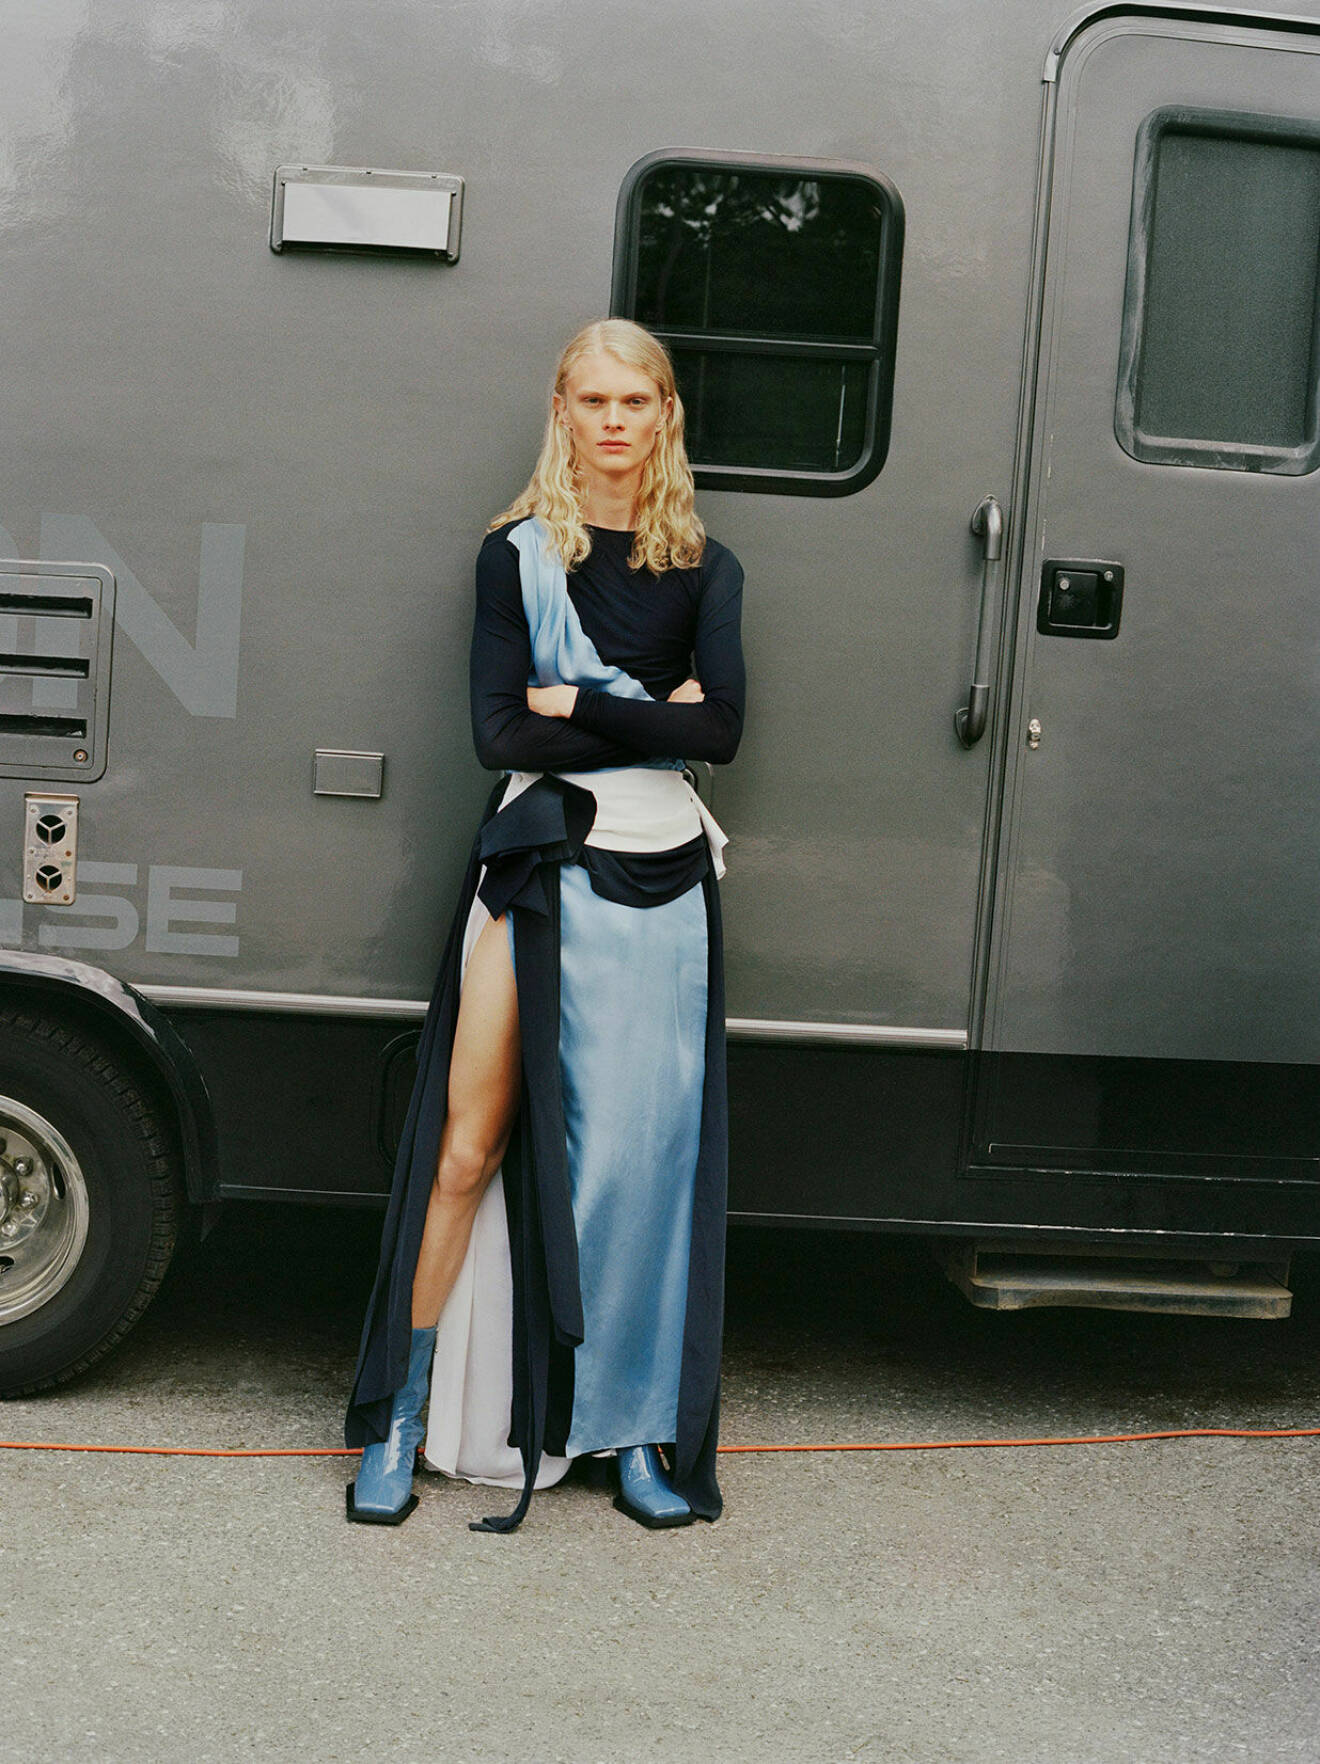 Fotomodellen Jako har på sig en långklänning i mörk- och ljusblått tillsammans med blåa boots